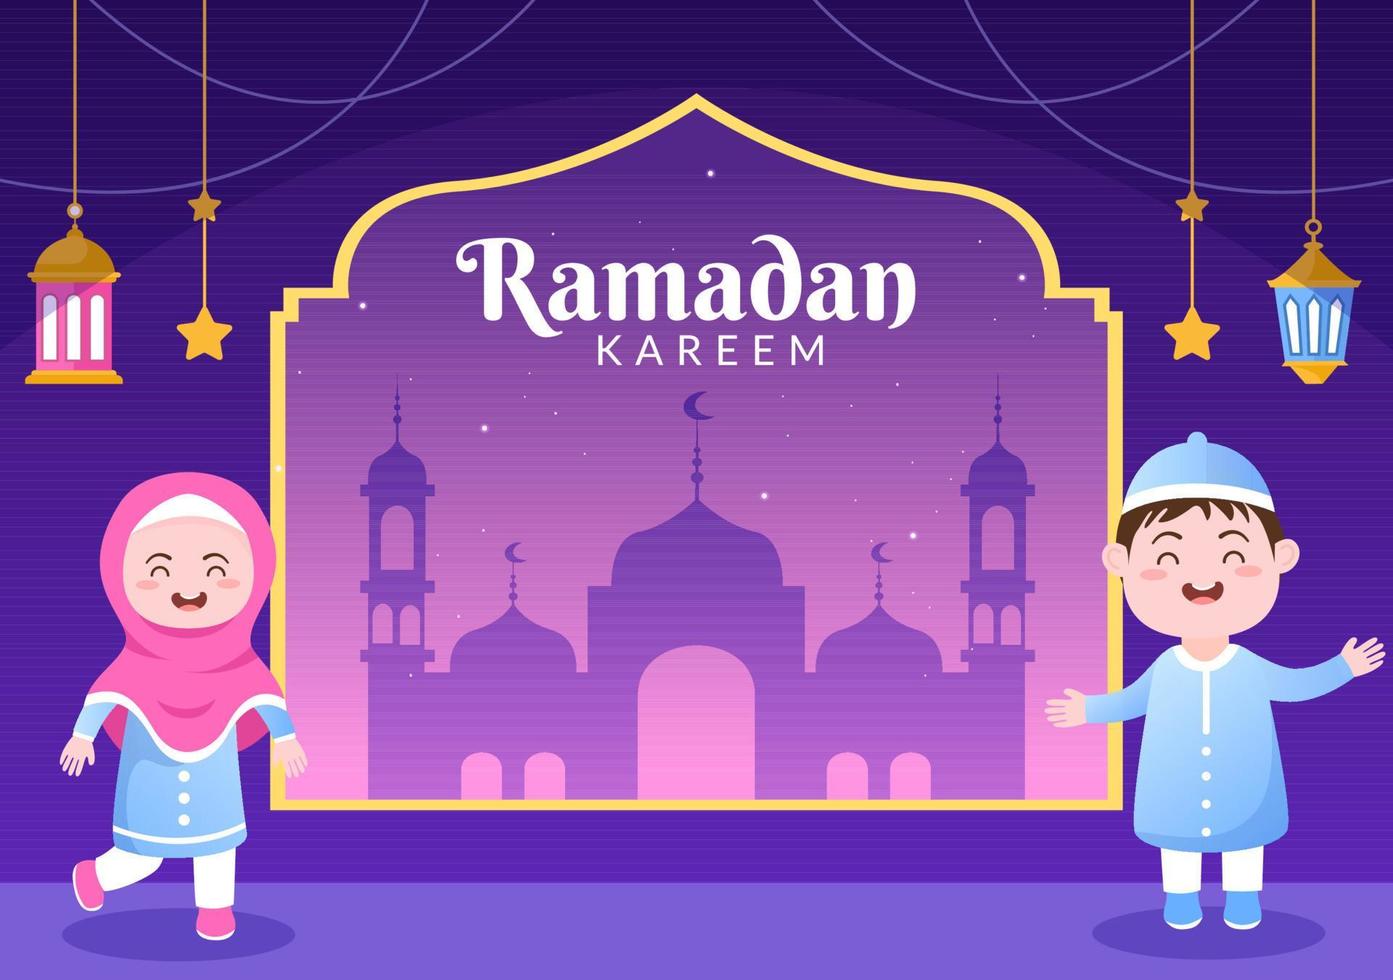 ramadan kareem met mensen, moskee, lantaarns en maan in platte achtergrond vectorillustratie voor religieuze vakantie islamitische eid fitr of adha festival spandoek of poster vector